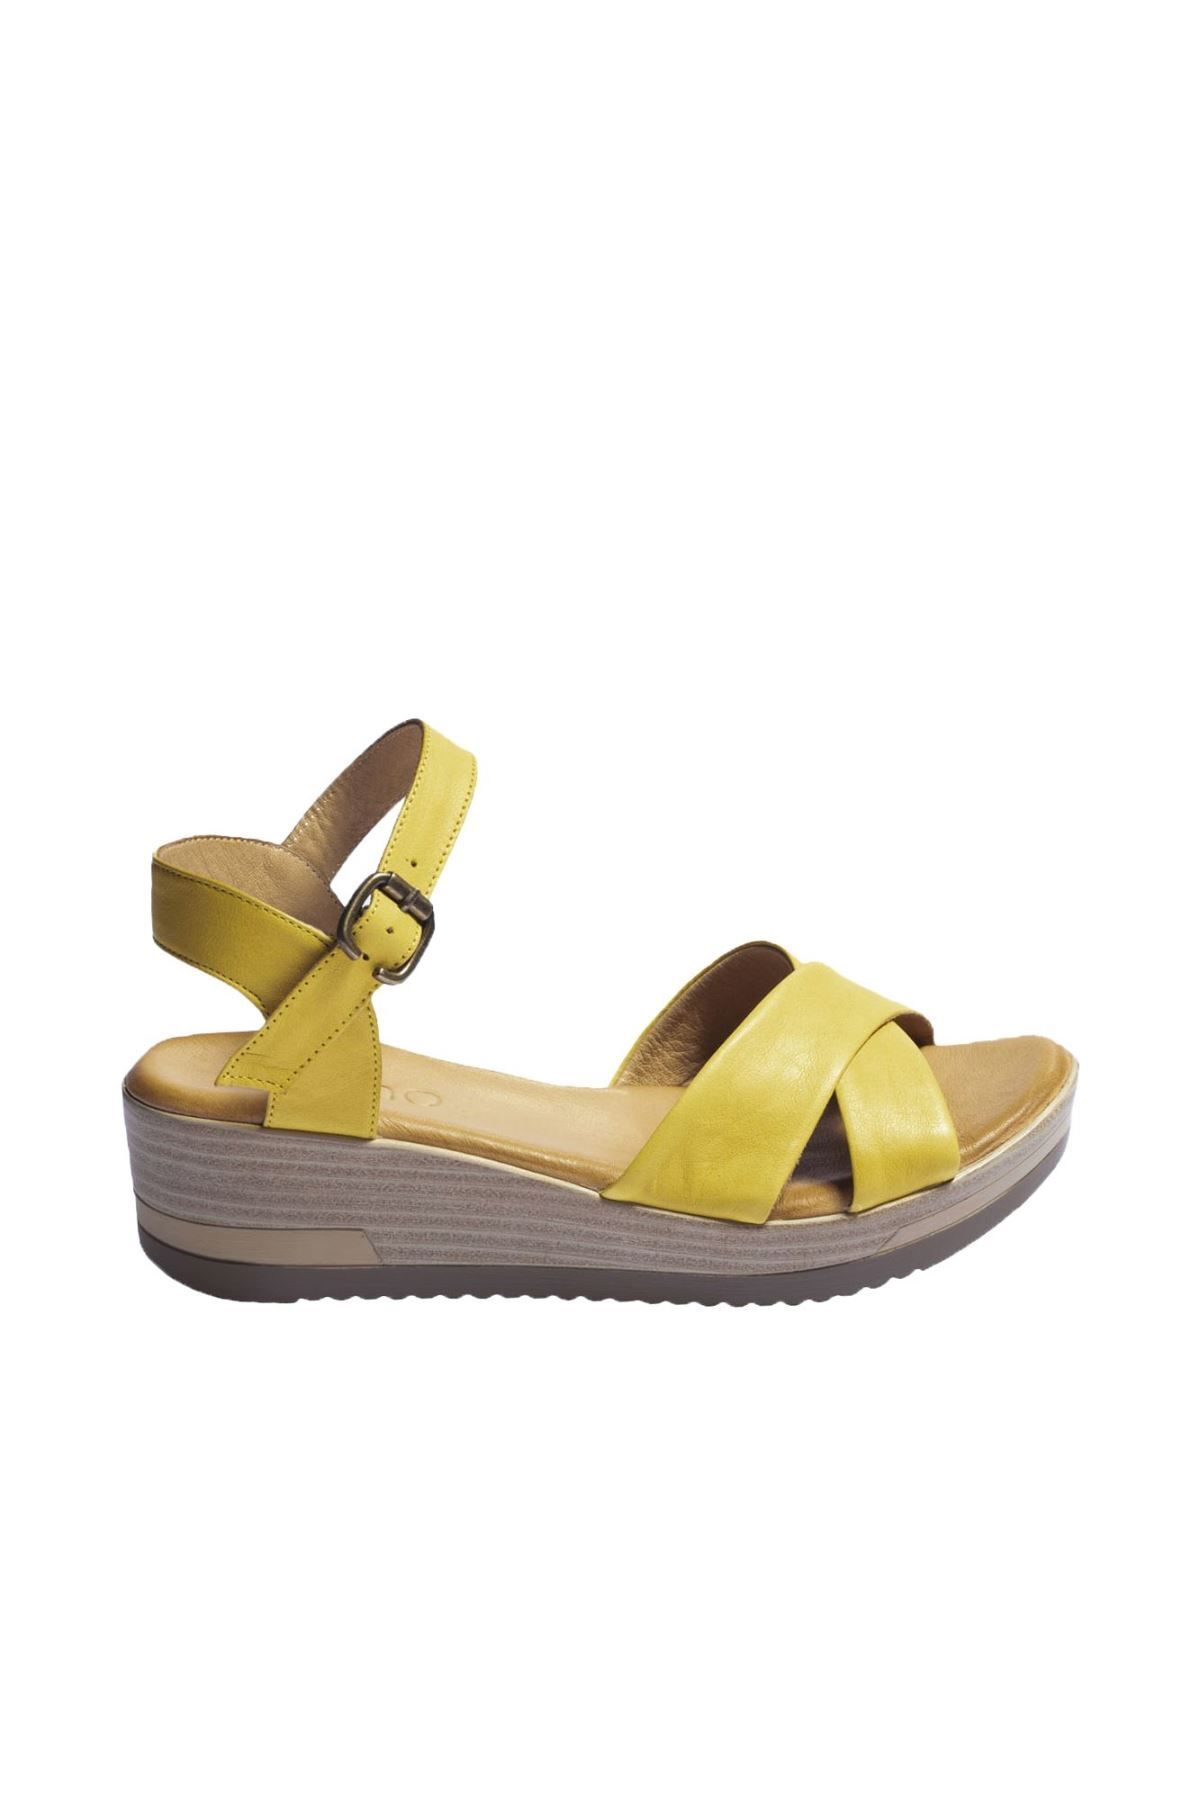 BUENO Shoes Sarı Deri Kadın Dolgu Topuklu Sandalet